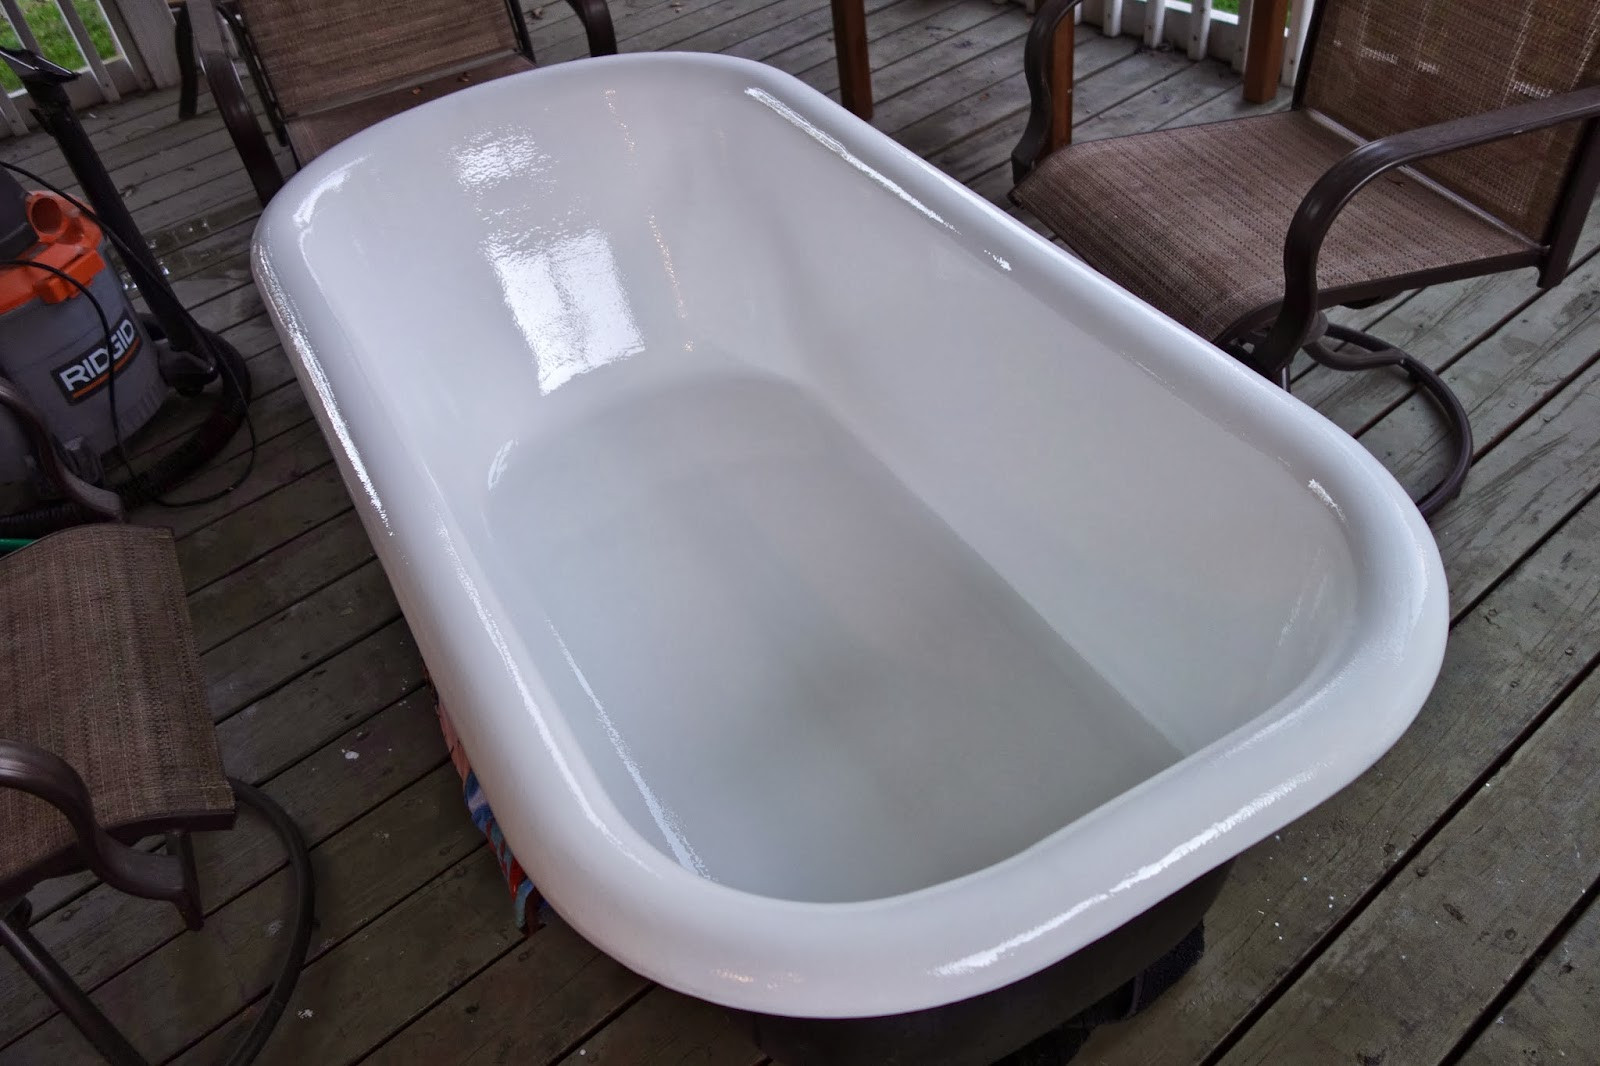 Best ideas about DIY Bathtub Refinishing
. Save or Pin rustyfarmhouse DIY Refinishing the Clawfoot Tub Part 2 Now.